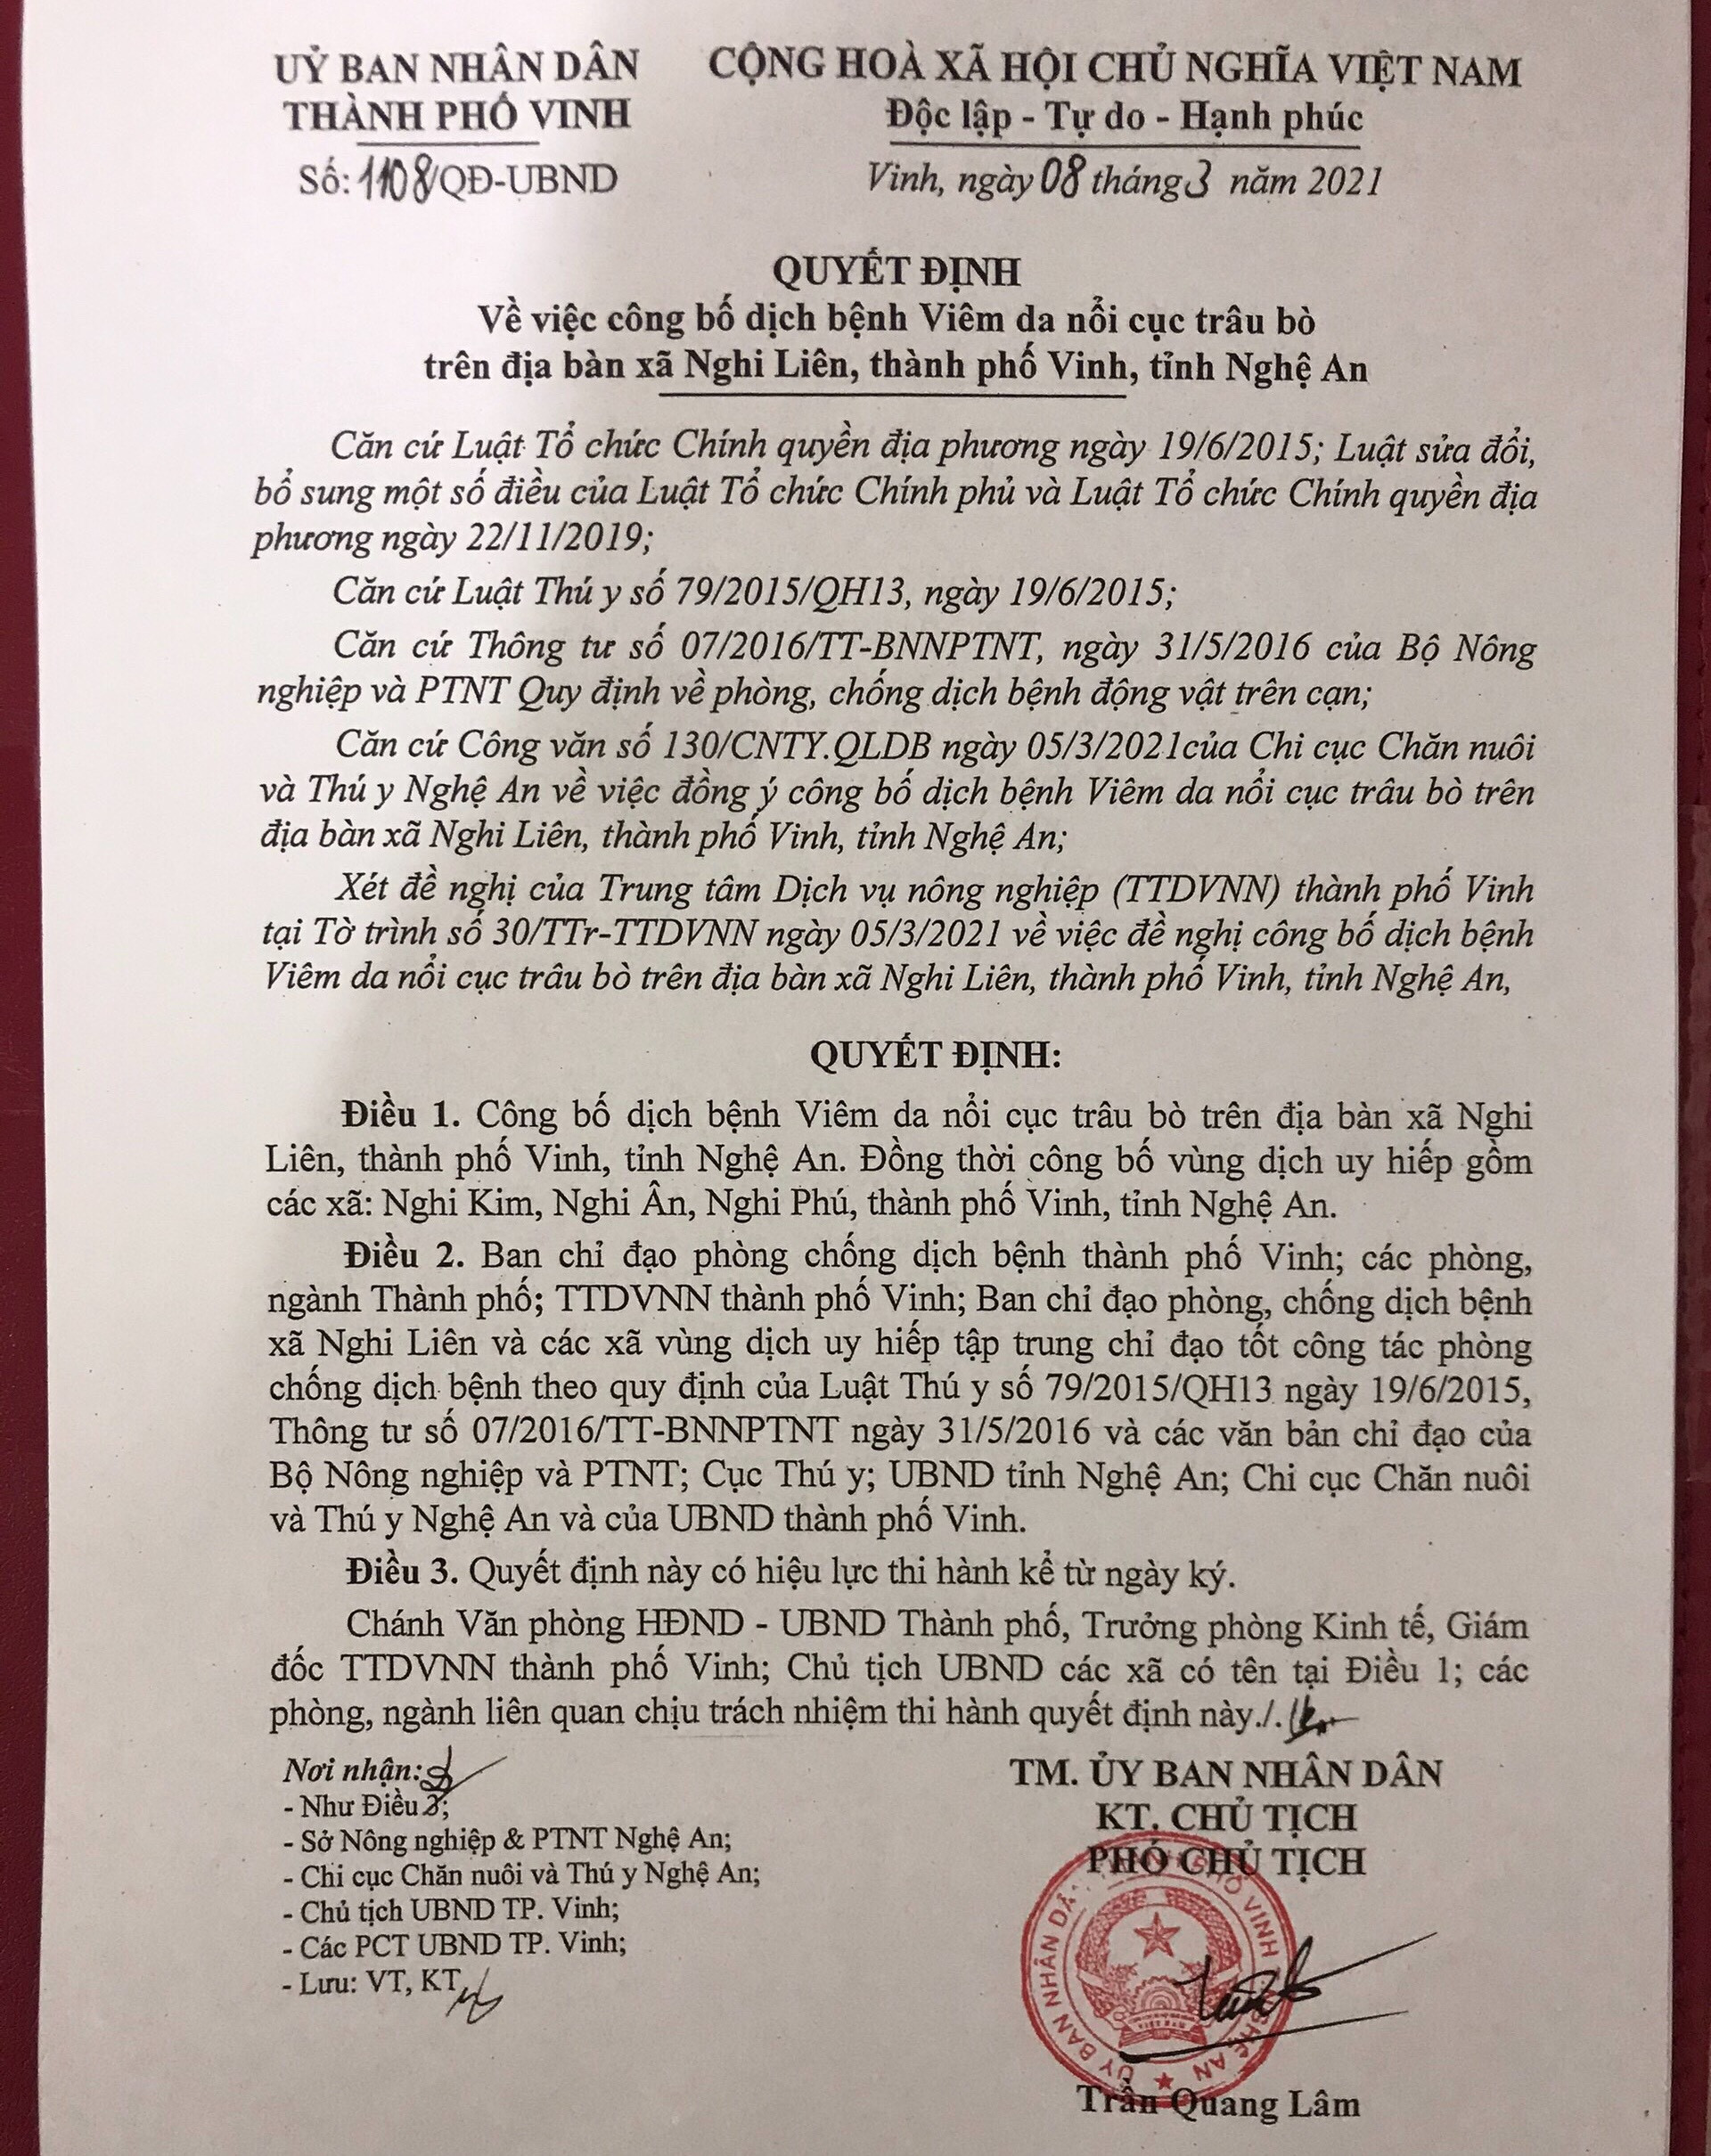 Quyết định của UBND thành phố Vinh công bố dich viêm da u cục trên đàn bò xã Nghi Liên. Ảnh: Nguyễn Hải